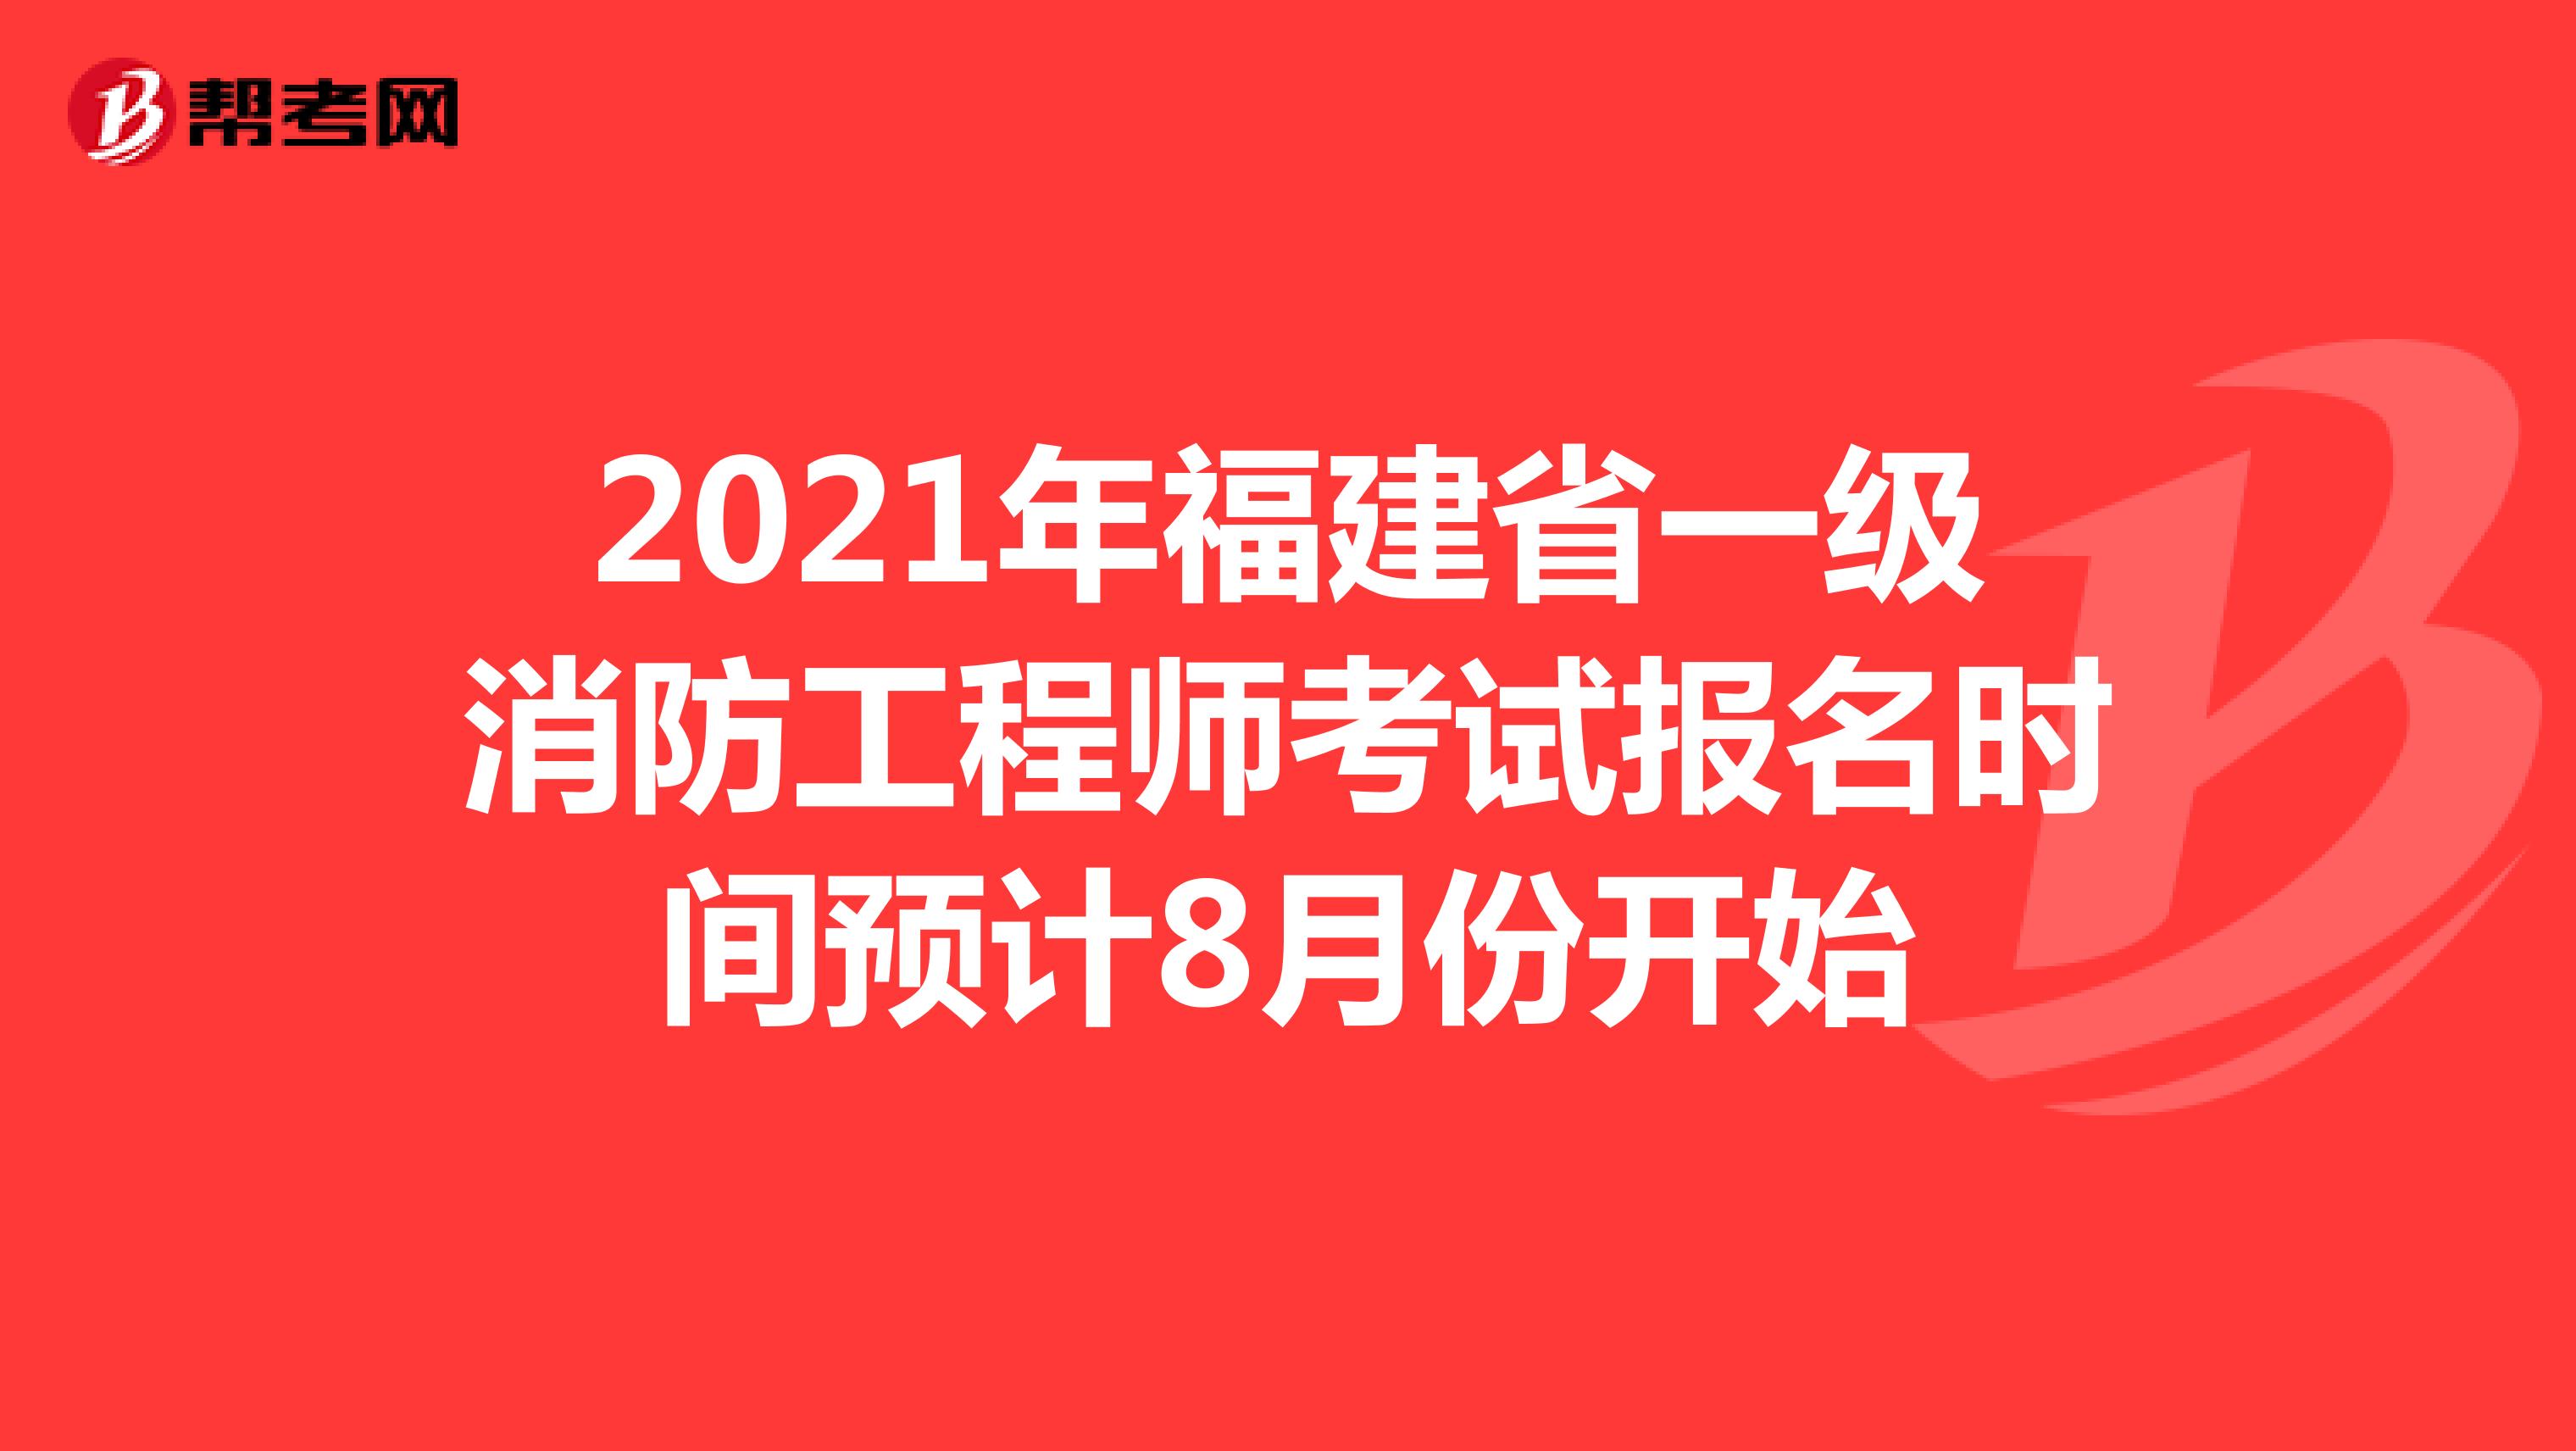 2021年福建省一级消防工程师考试报名时间预计8月份开始